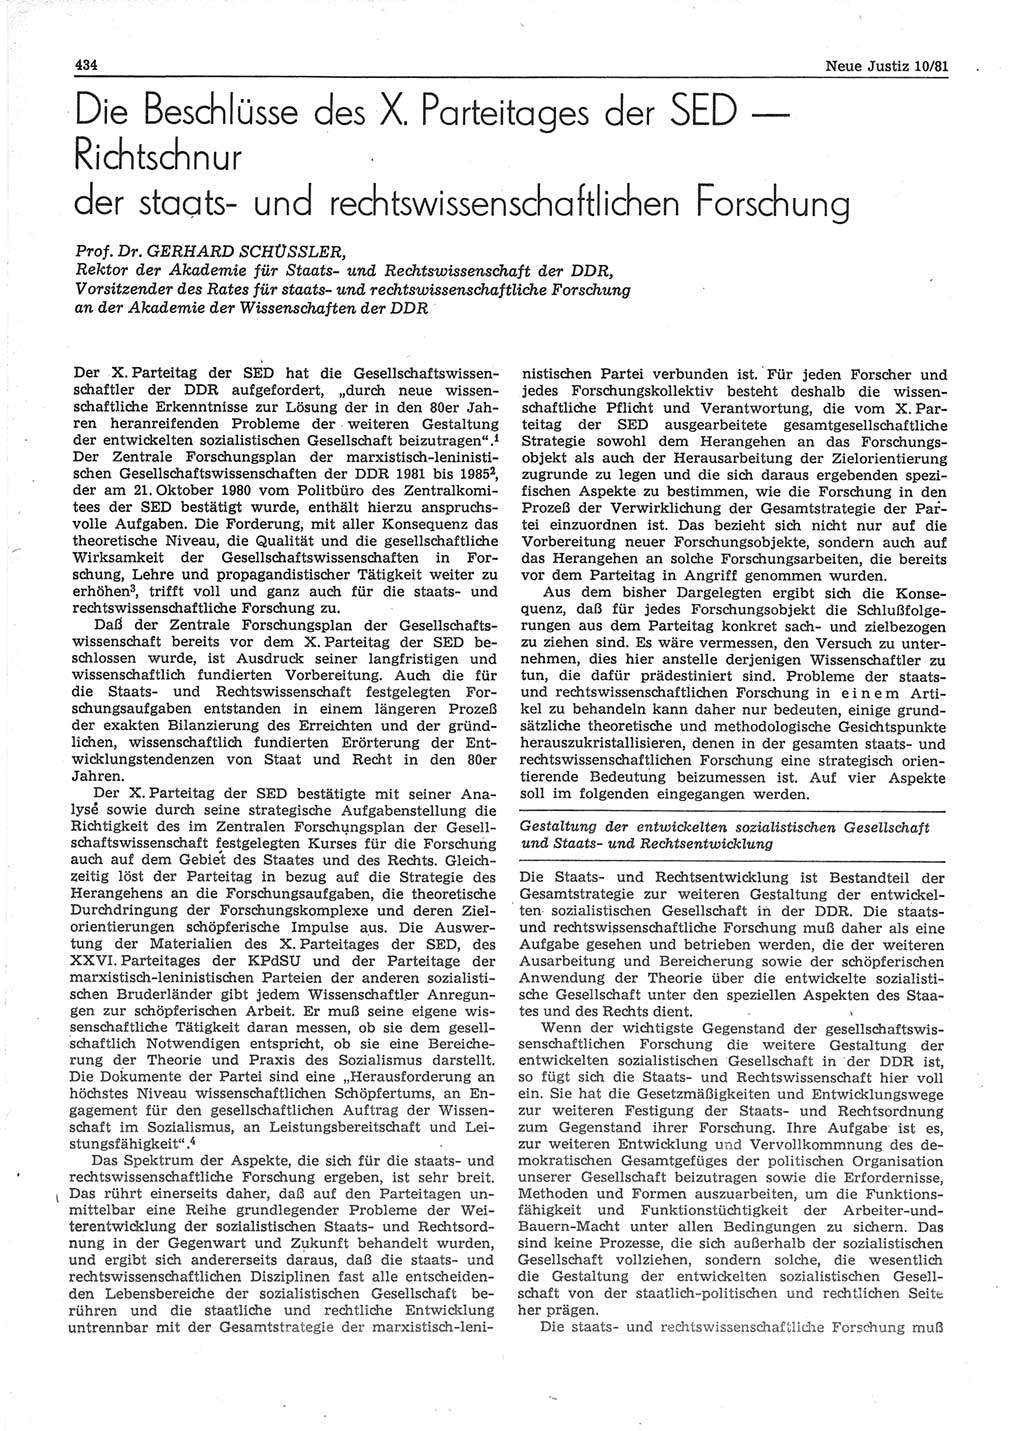 Neue Justiz (NJ), Zeitschrift für sozialistisches Recht und Gesetzlichkeit [Deutsche Demokratische Republik (DDR)], 35. Jahrgang 1981, Seite 434 (NJ DDR 1981, S. 434)